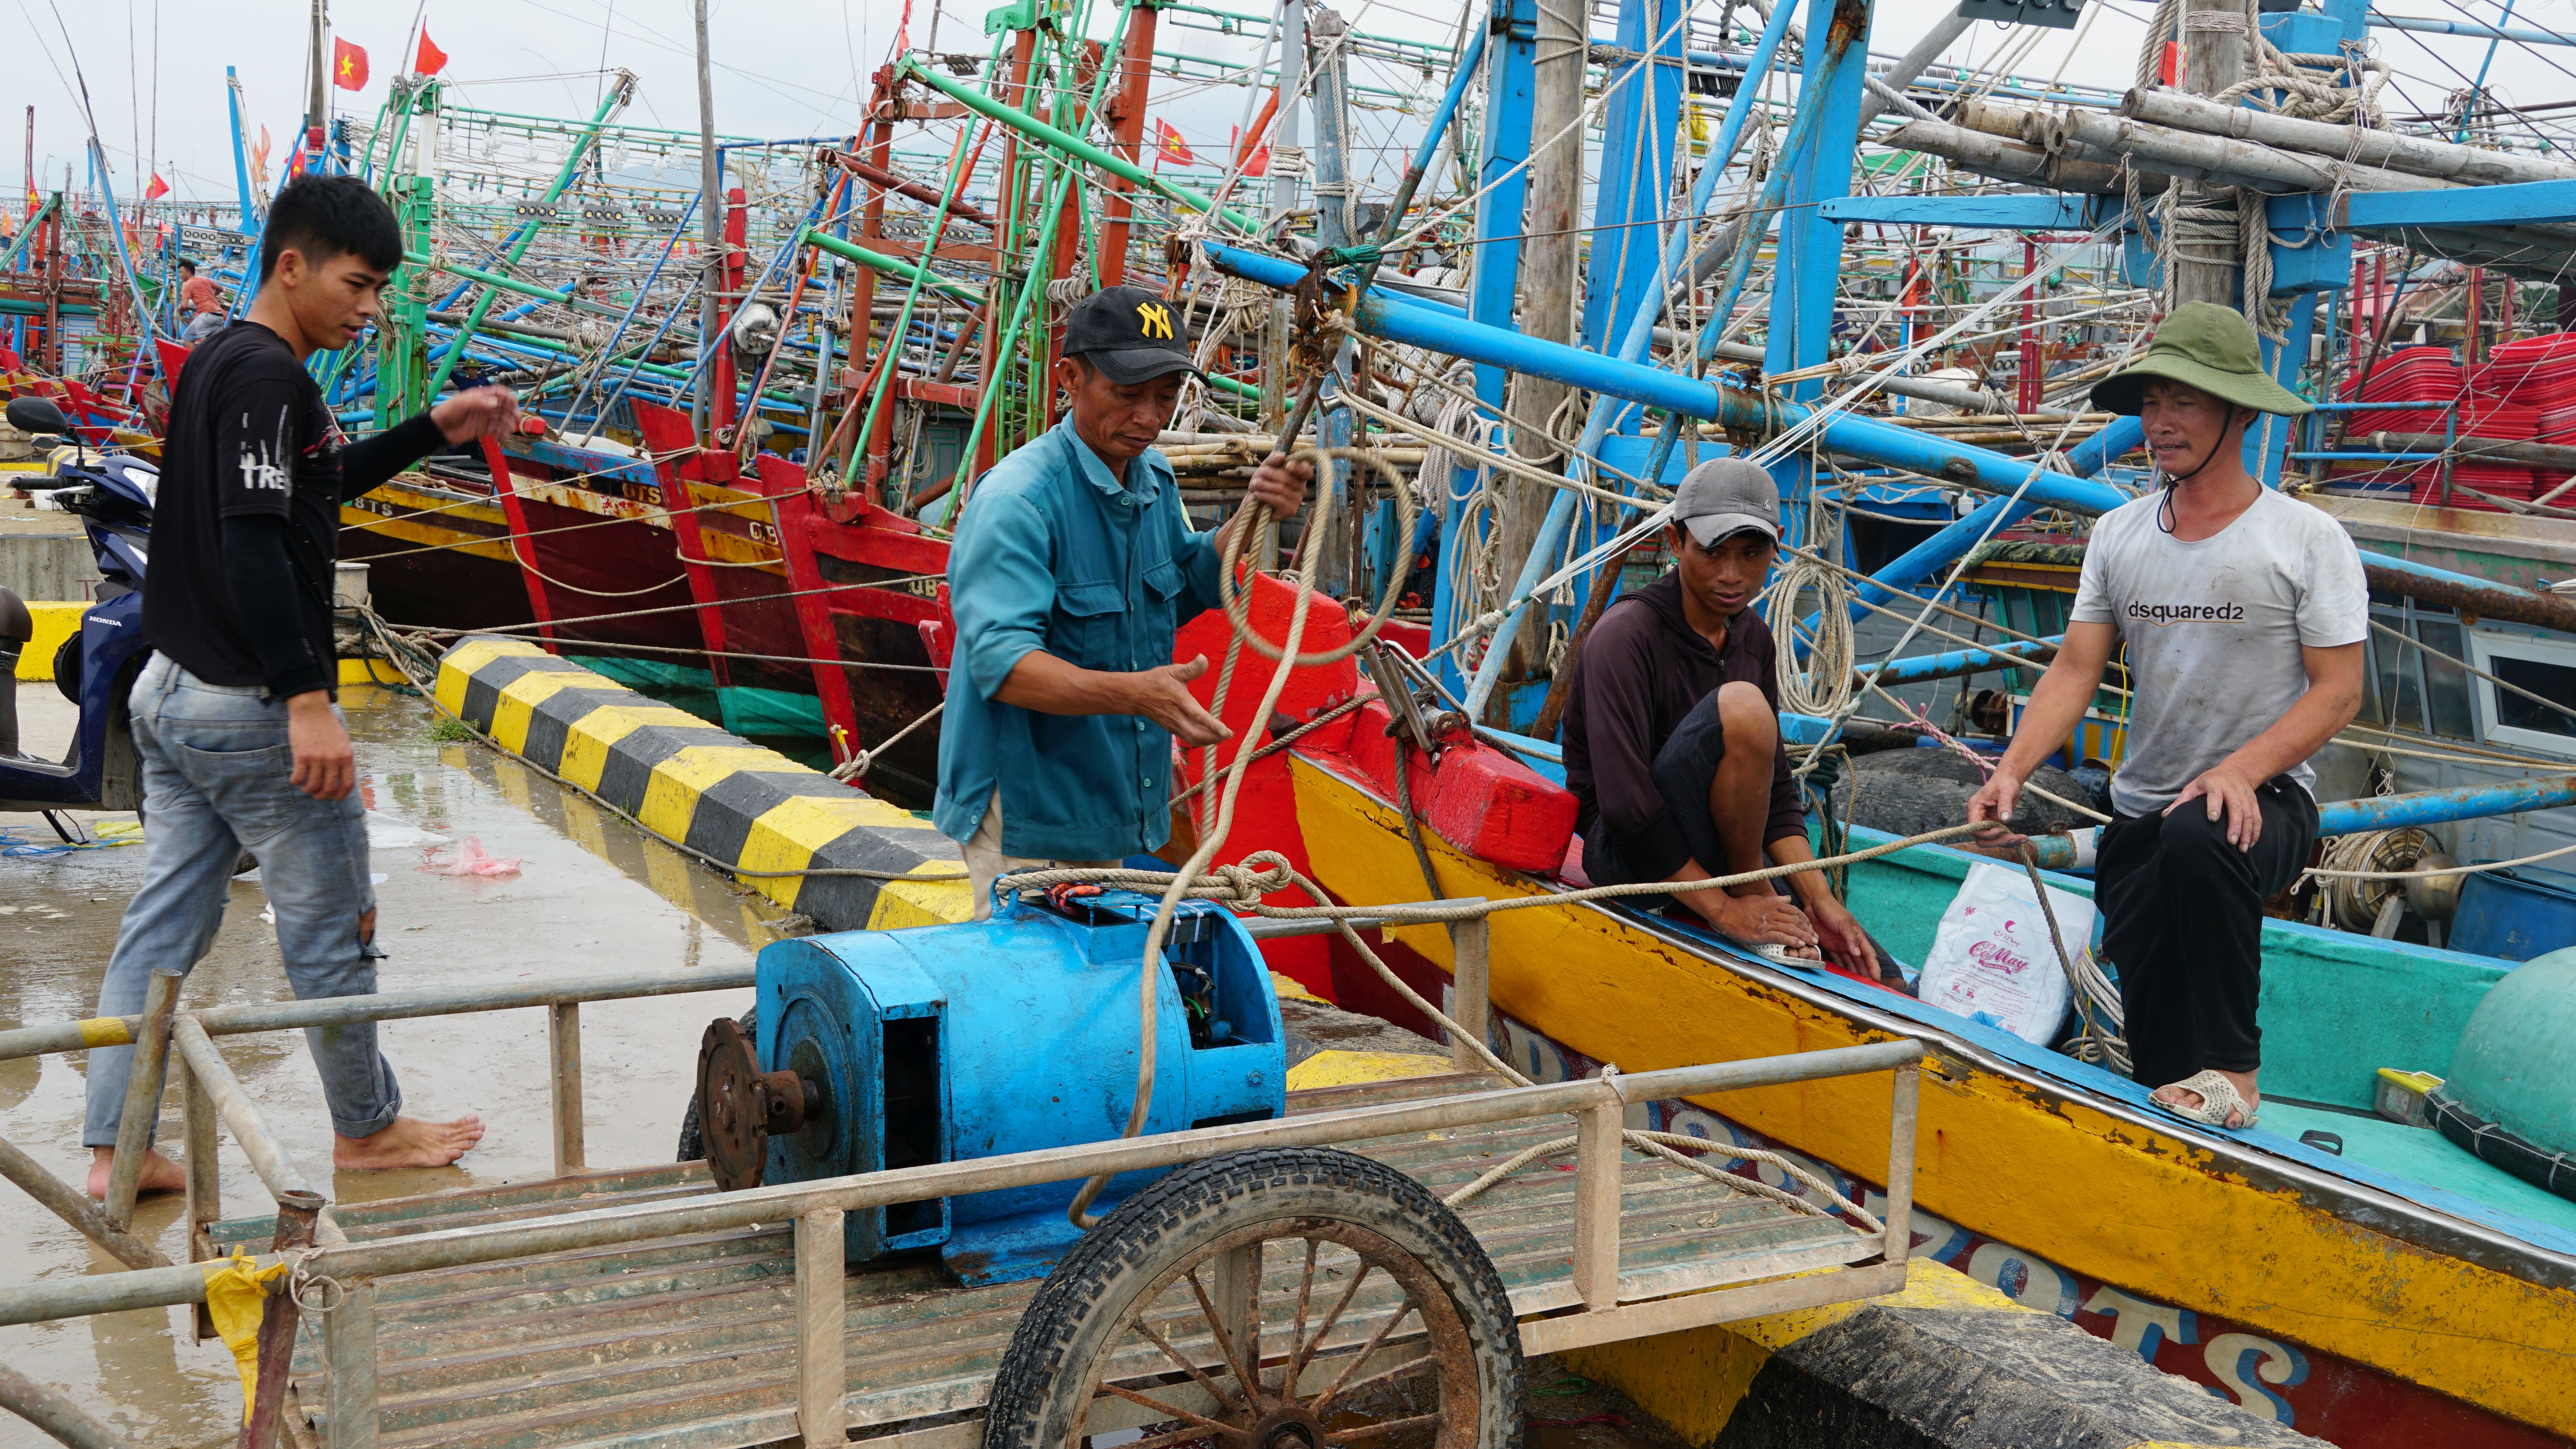 Ngư dân Cảnh Dương (Quảng Trạch) chằng néo tàu thuyền, đưa các thiết bị quan trọng về cất giữ để tránh va đập, thiệt hại khi có bão.